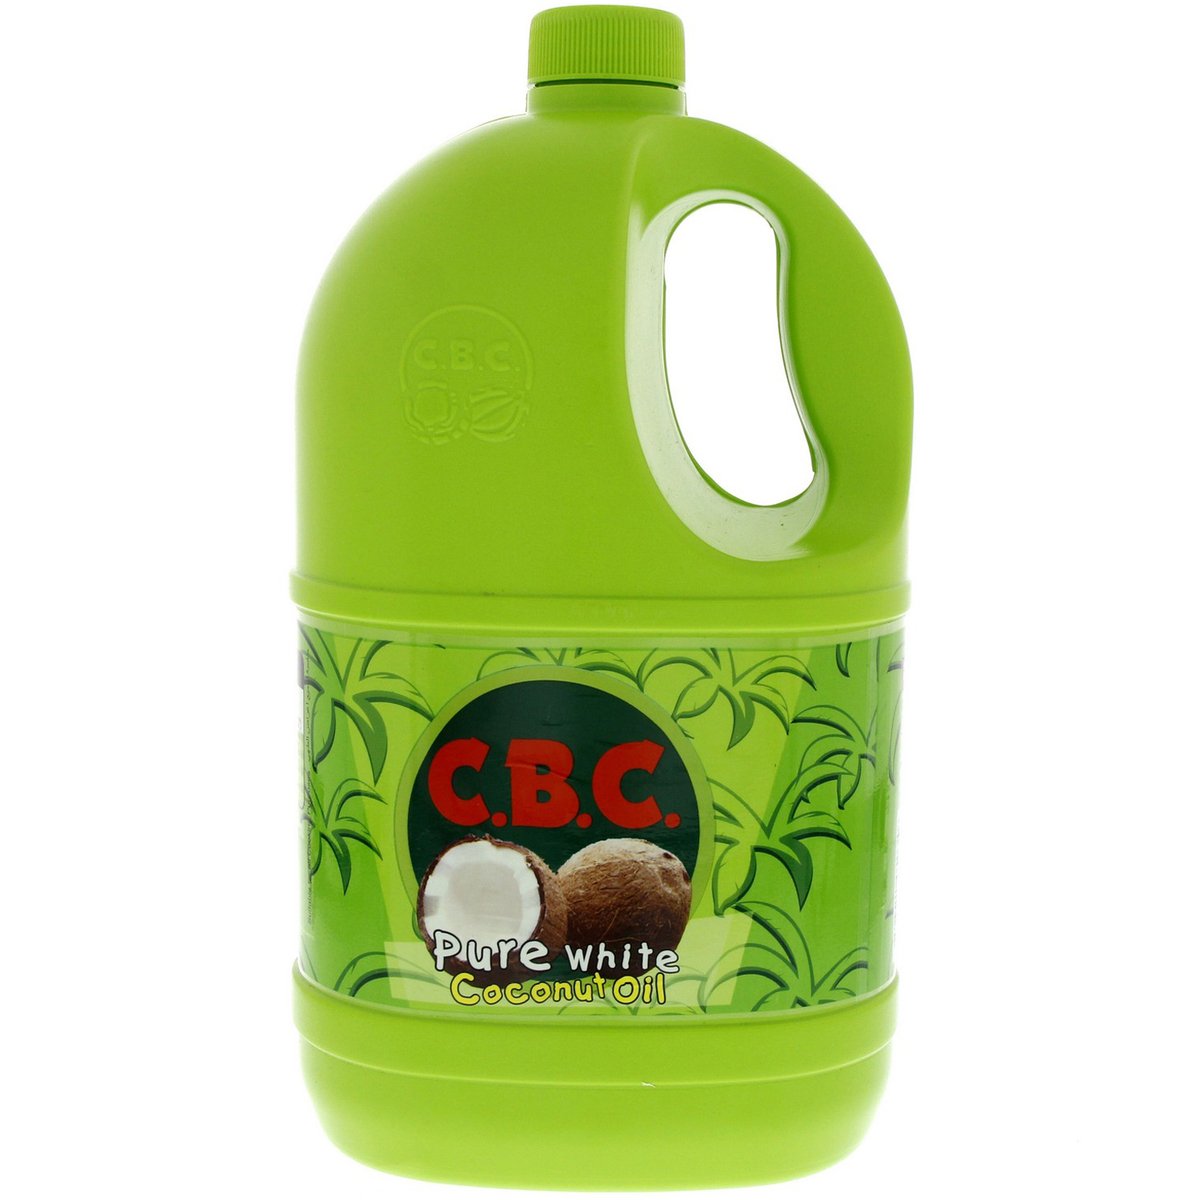 Cbc Pure White Coconut Oil 2 Litres